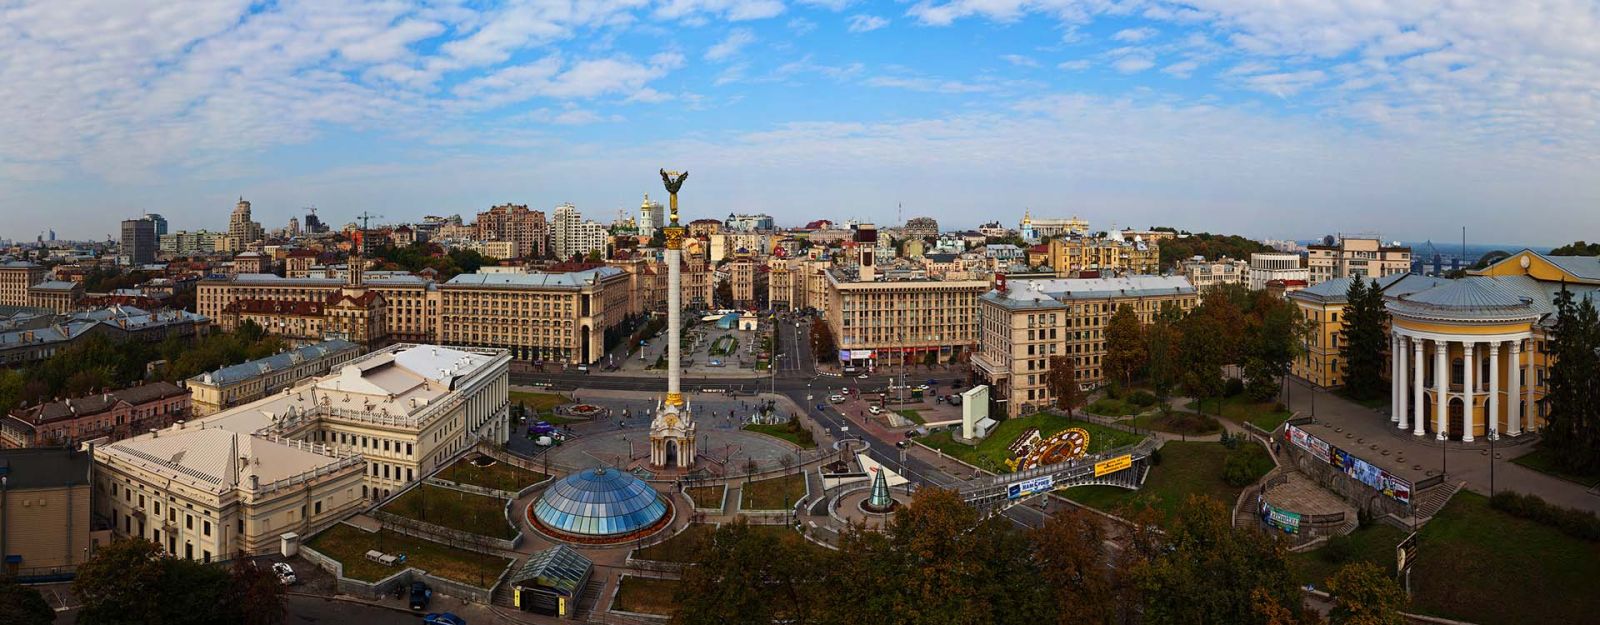 Готелі «Козацький» та «Україна» на Майдані Незалежності можуть стати спільною власністю українців